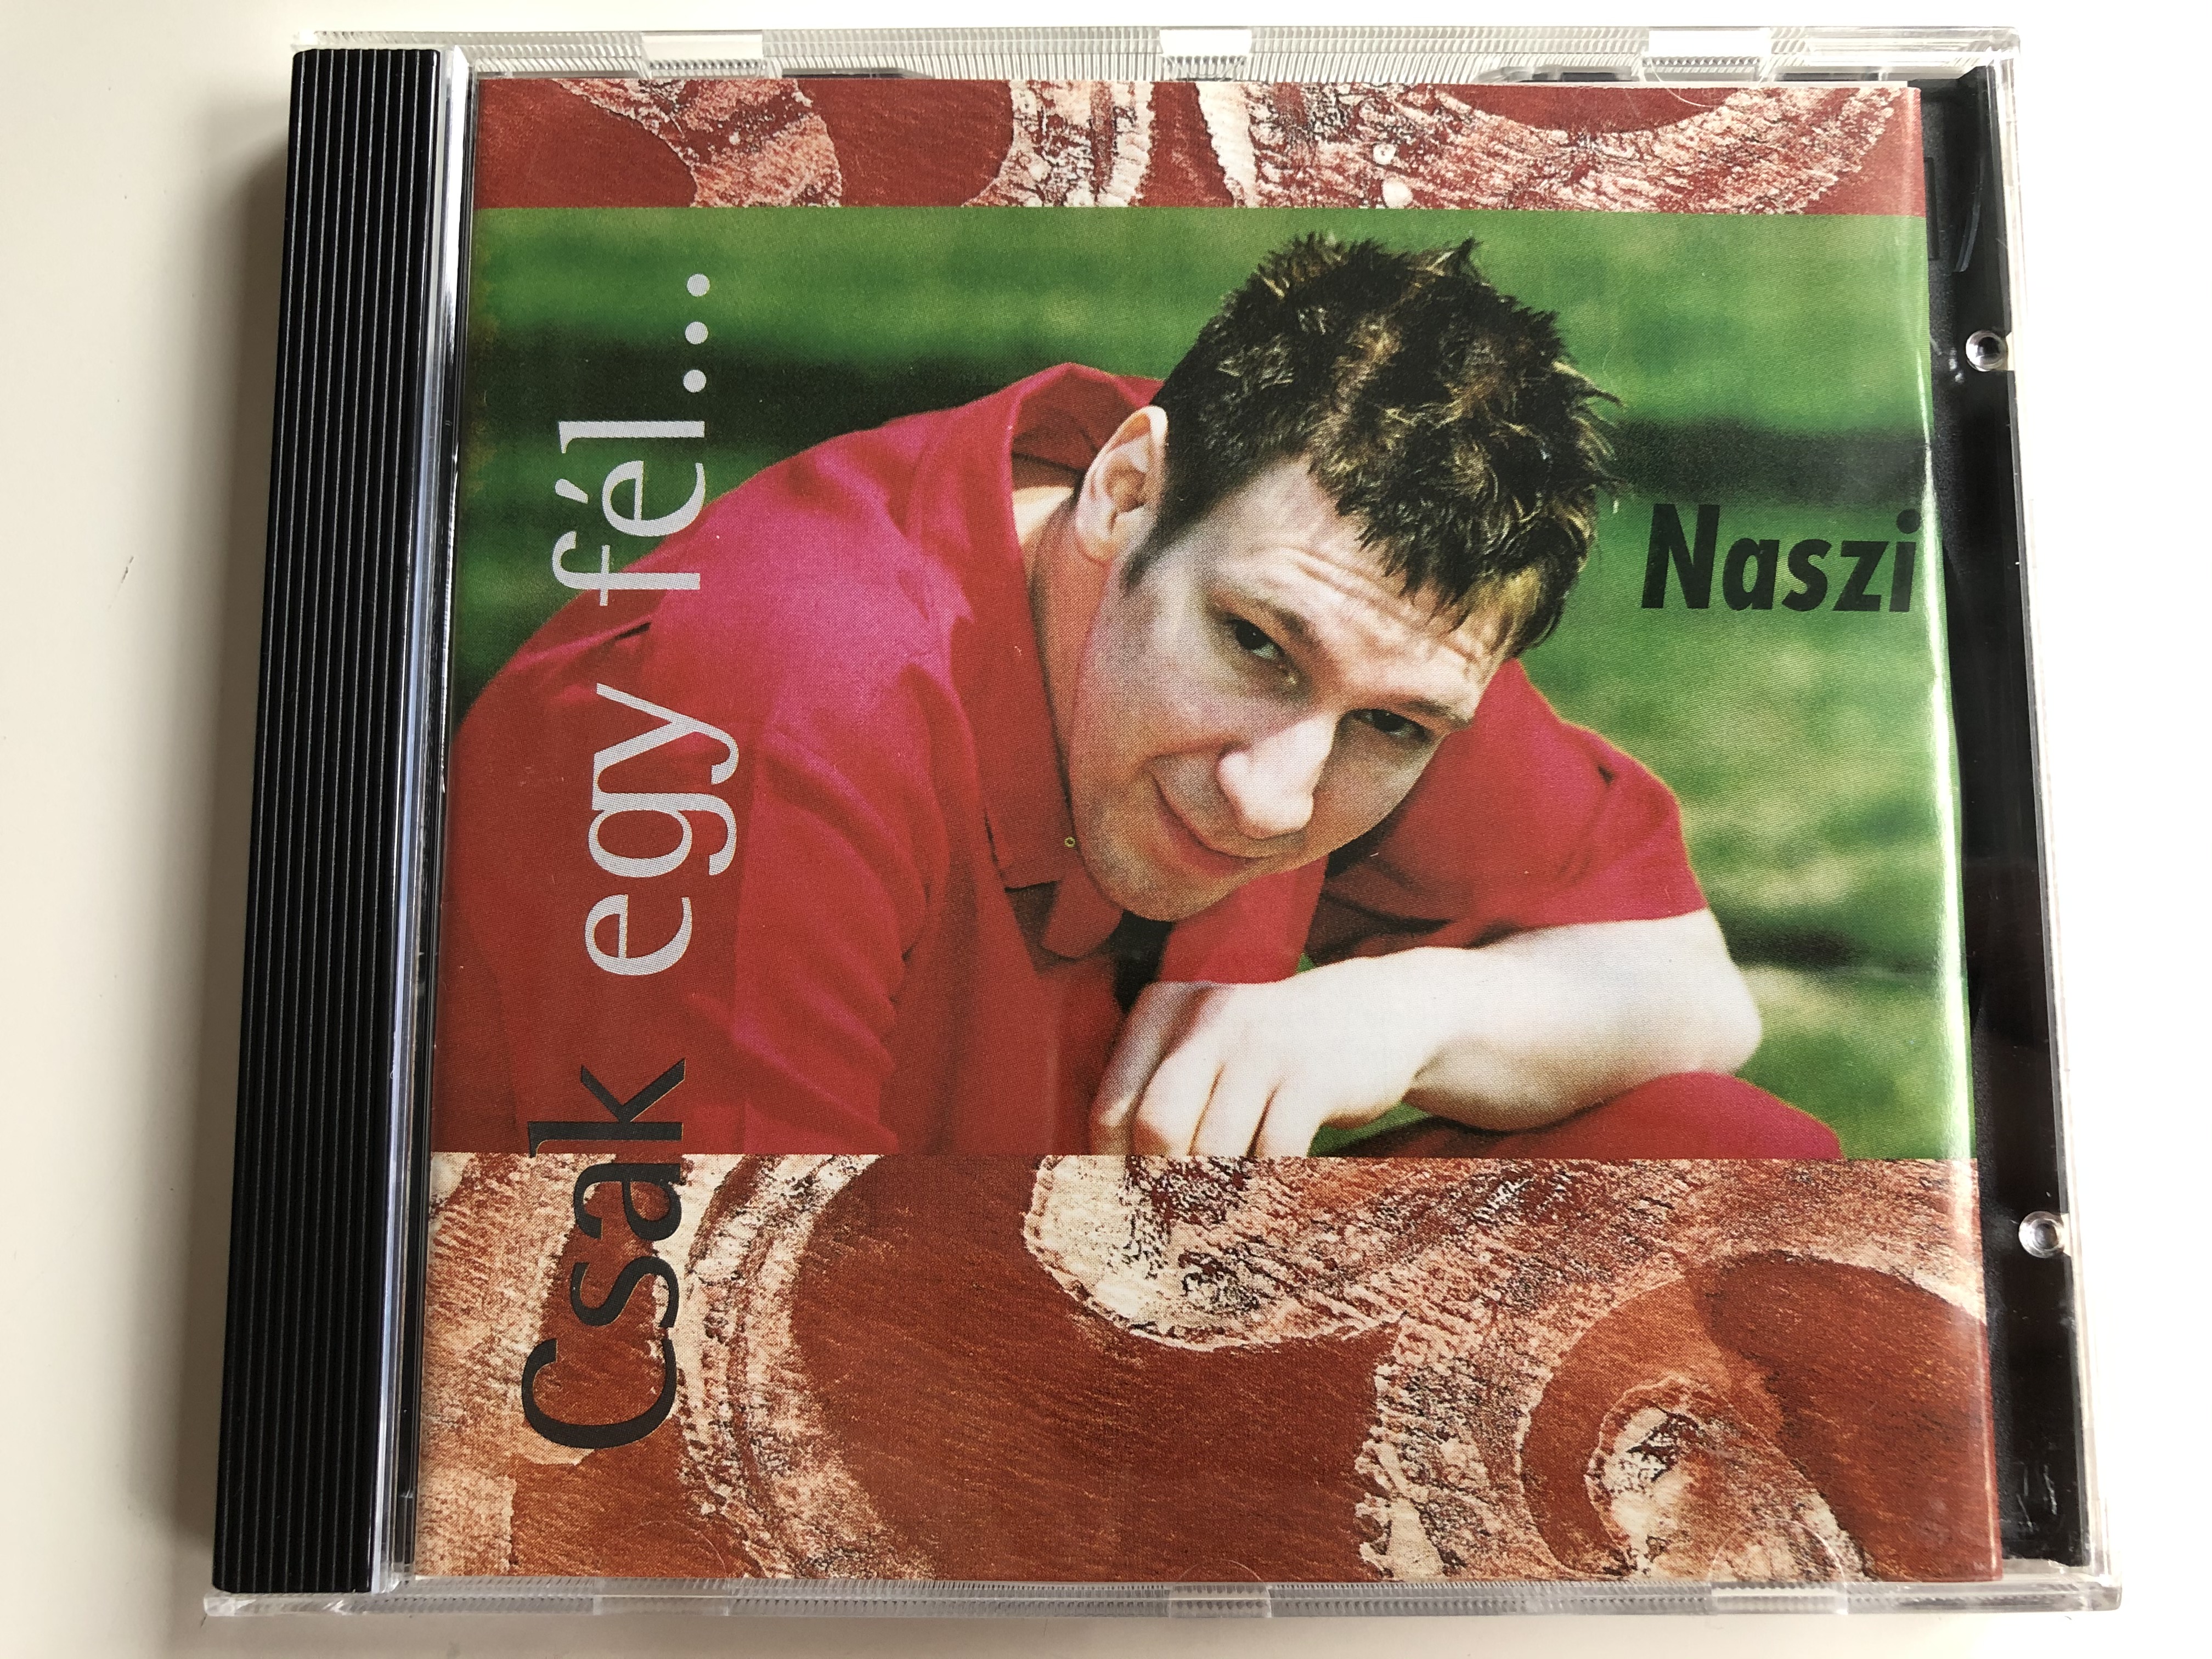 csak-egy-f-l...-naszi-song-records-audio-cd-2001-songcd-003-1-.jpg